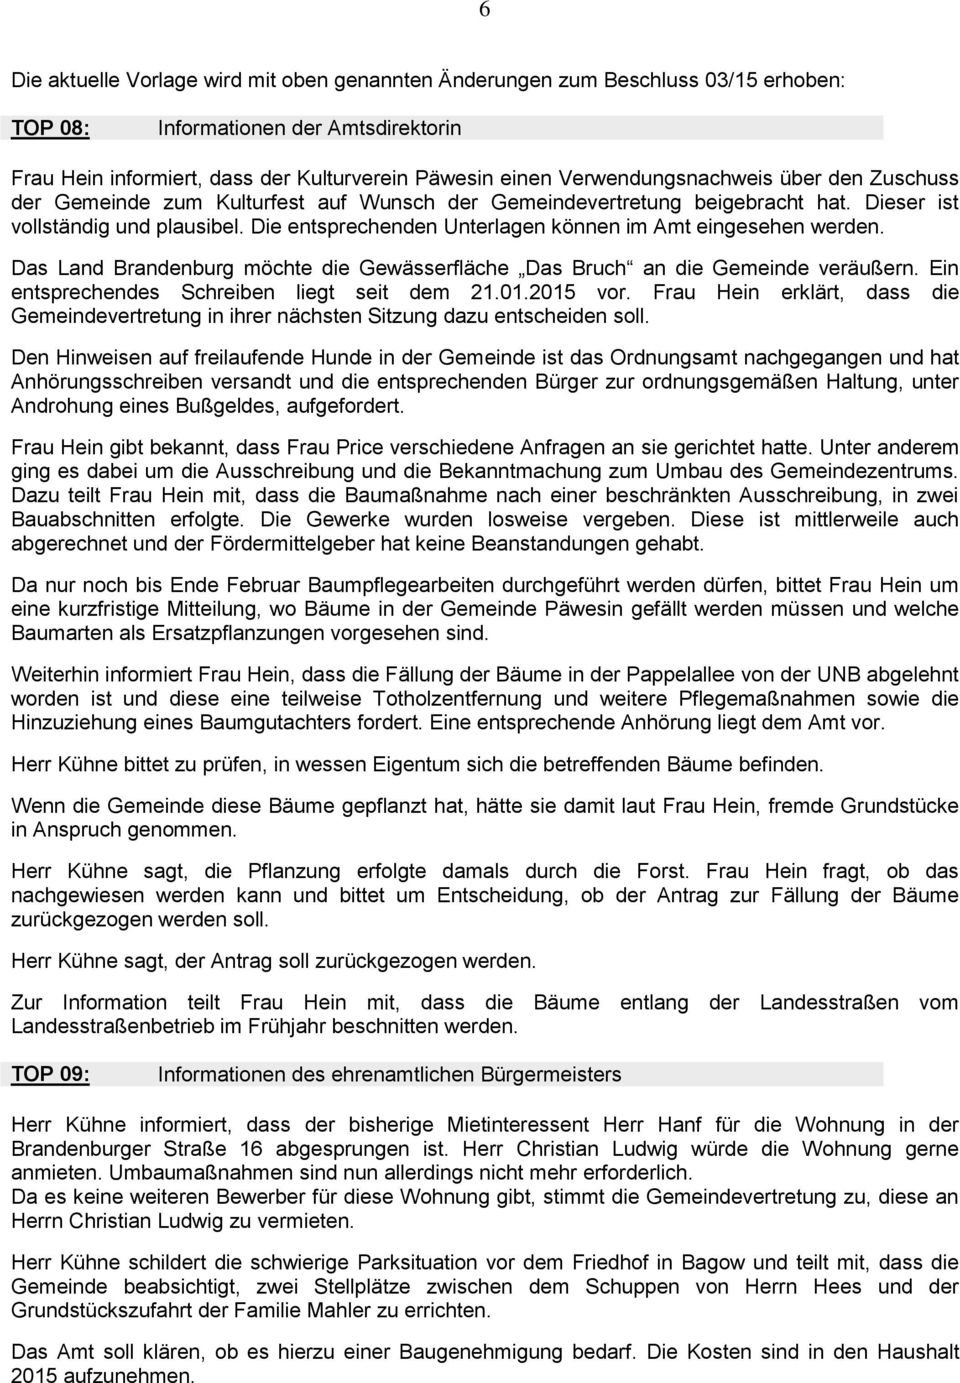 Die entsprechenden Unterlagen können im Amt eingesehen werden. Das Land Brandenburg möchte die Gewässerfläche Das Bruch an die Gemeinde veräußern. Ein entsprechendes Schreiben liegt seit dem 21.01.